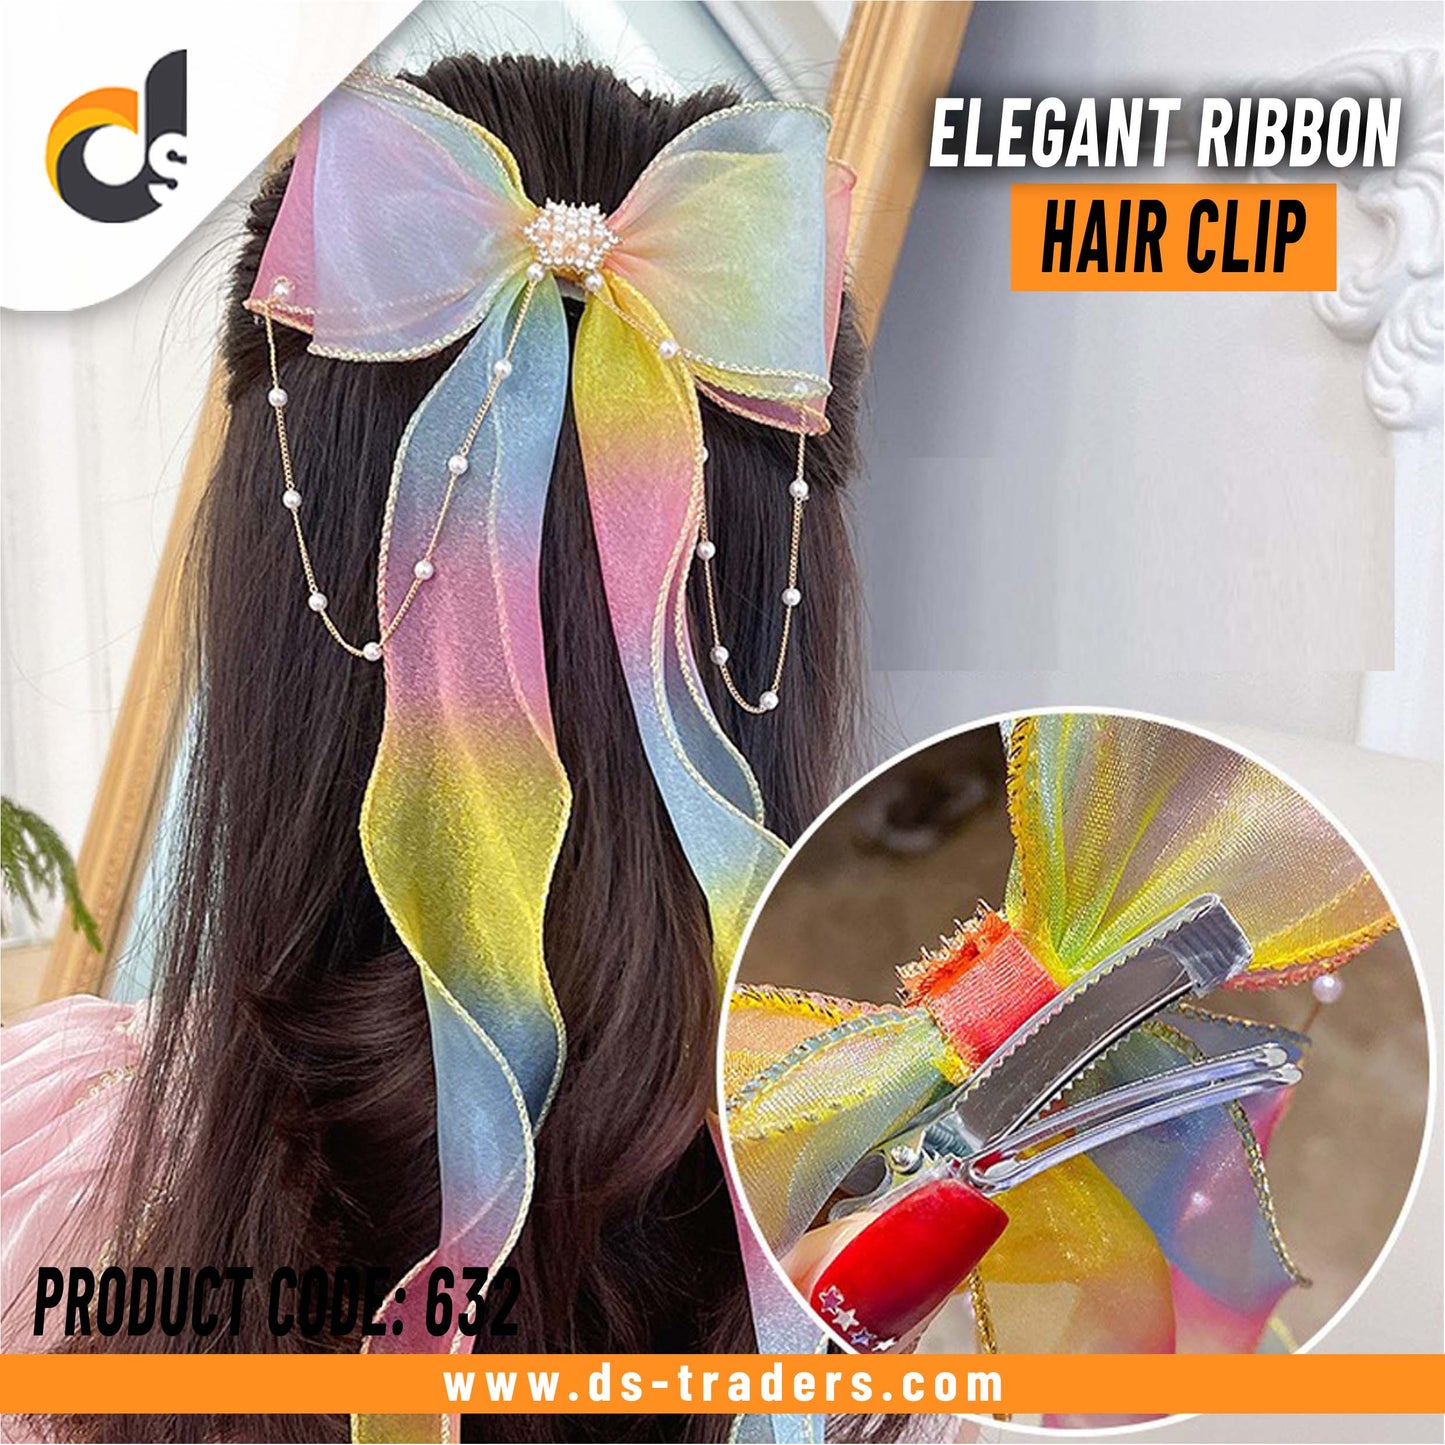 Elegant Ribbon Hair Clip